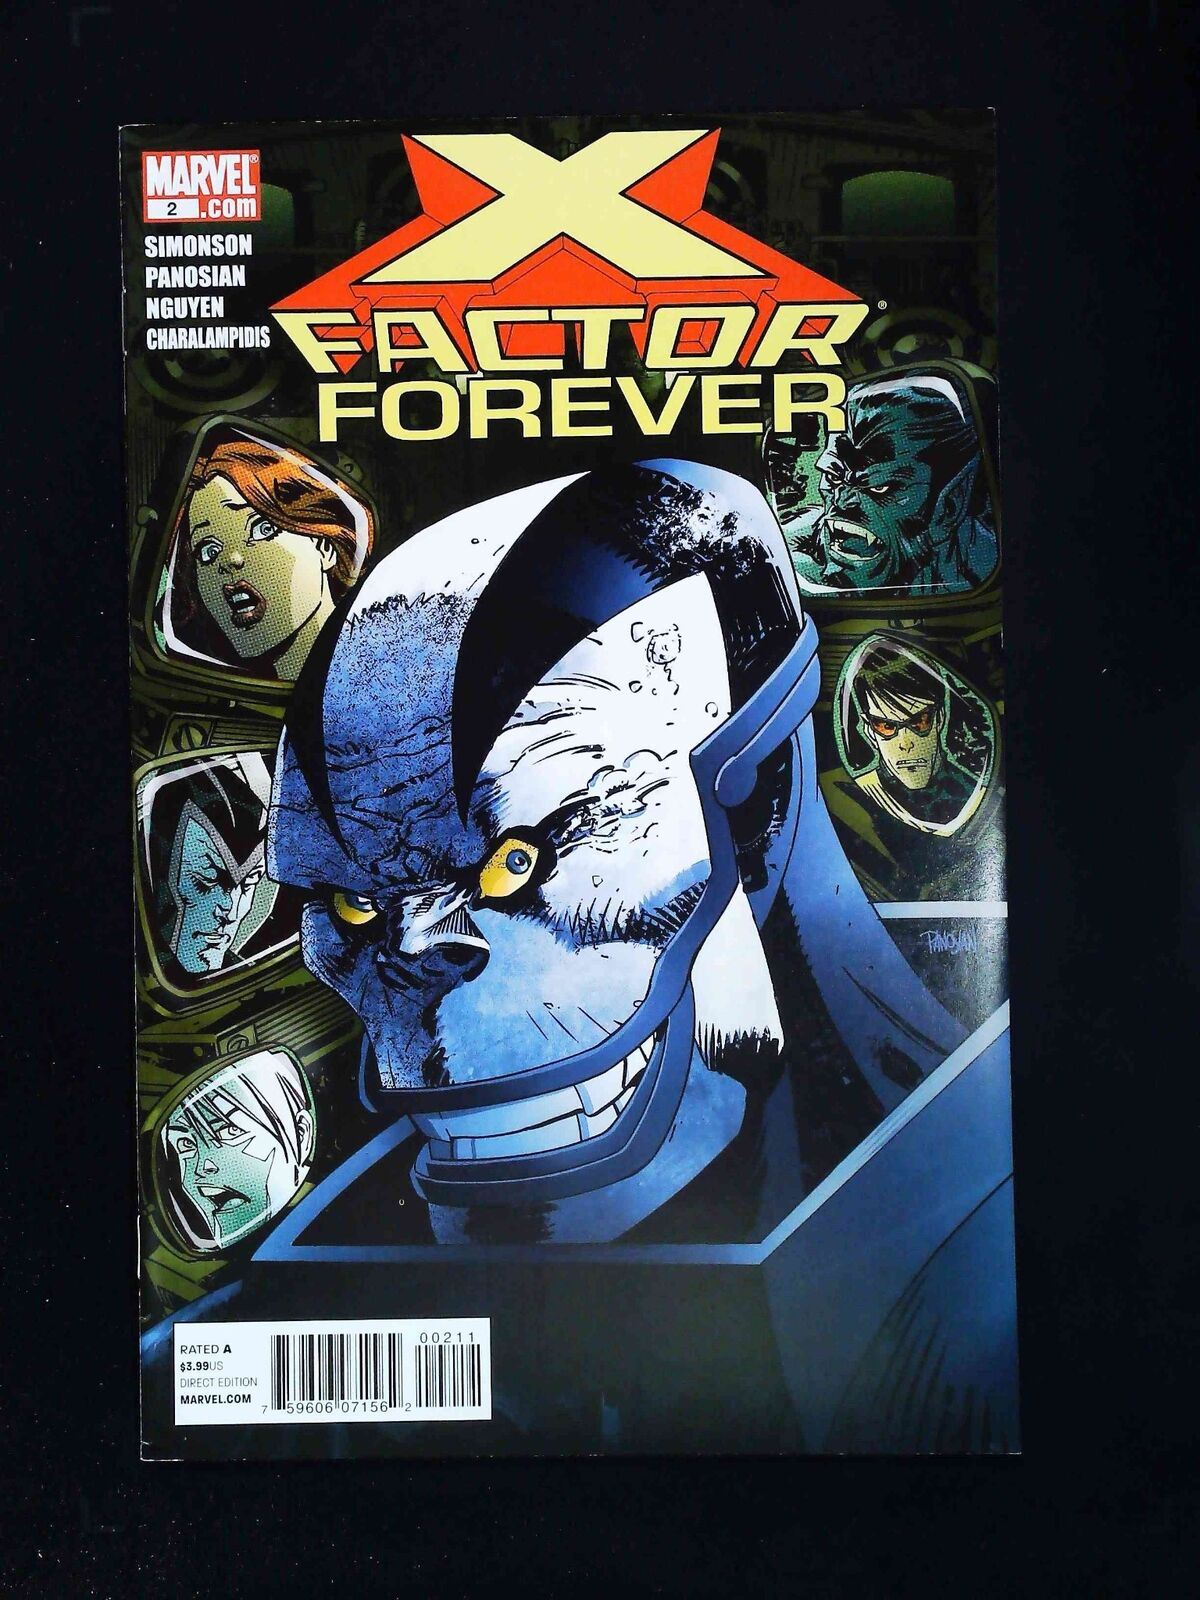 X-Factor  Forever  #2  Marvel Comics 2010 Vf/Nm